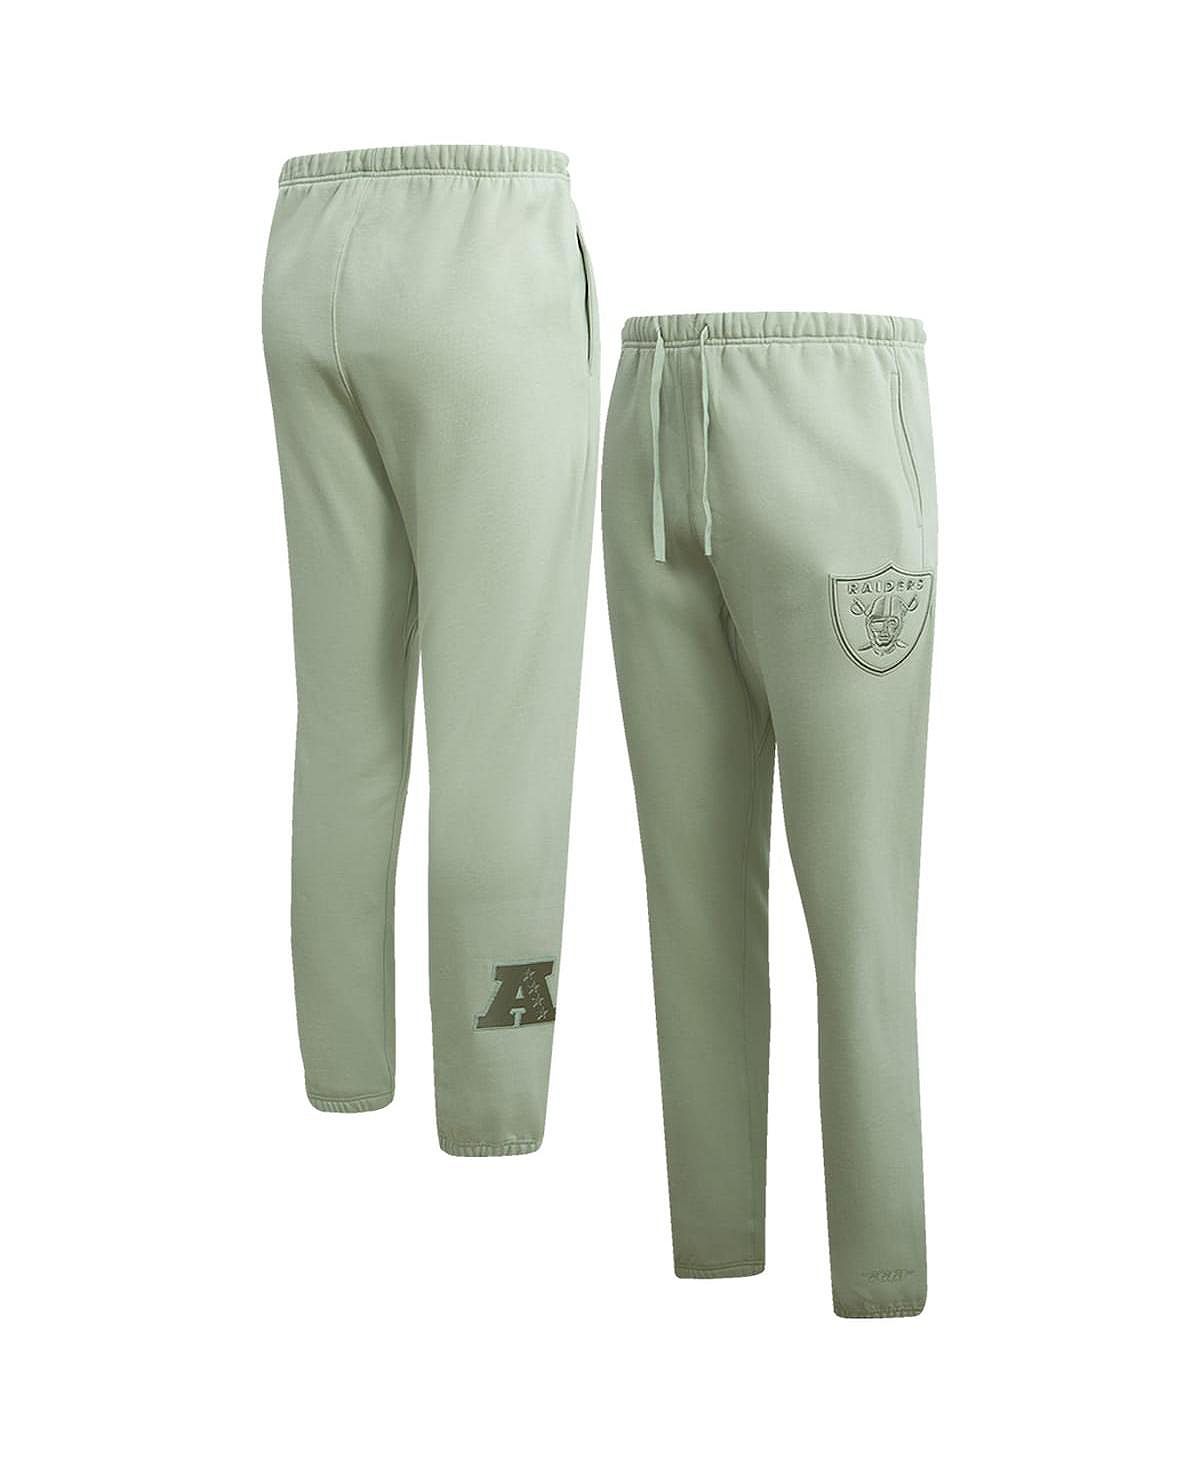 Мужские светло-зеленые флисовые спортивные штаны нейтрального цвета Las Vegas Raiders Pro Standard набор наклеек las vegas raiders nfl многоразовые для телефона спортивные